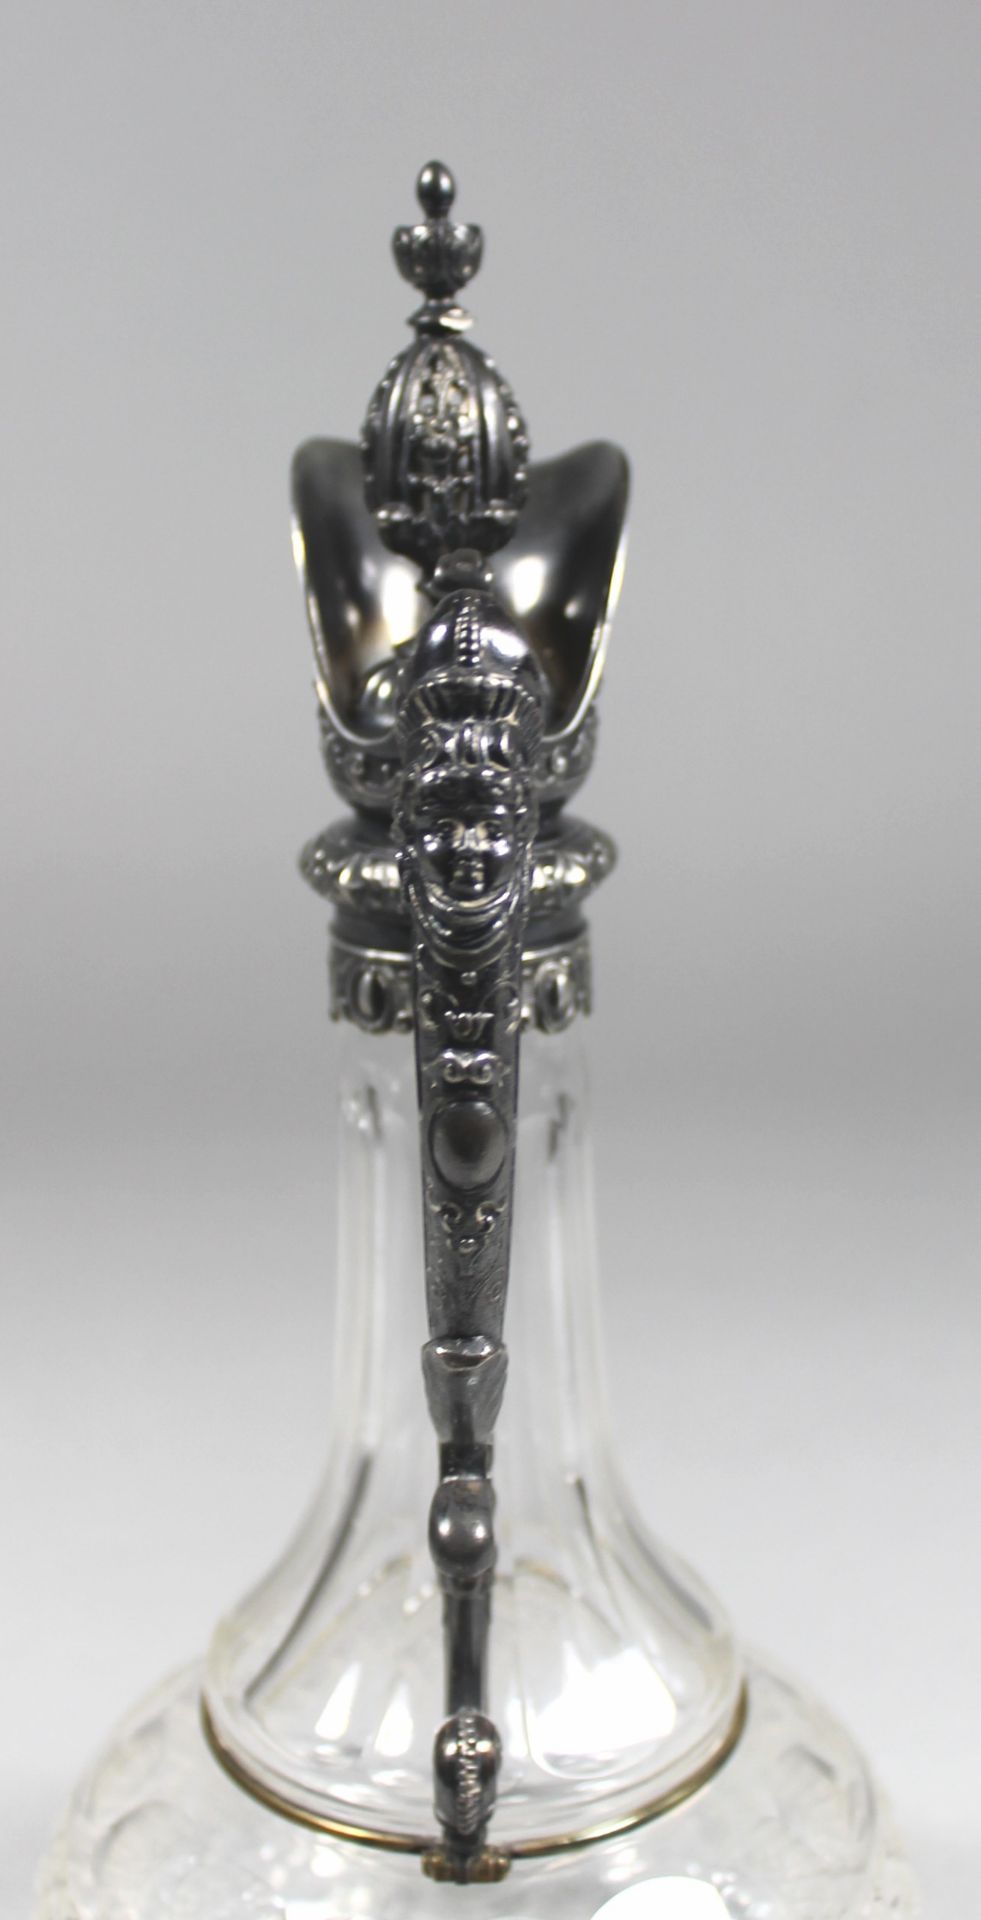 1 Historismus-Schenkkanne Kristall, bauchiger Korpus mit verschiedenen Schlifftechniken, Bodenstern, - Image 3 of 4